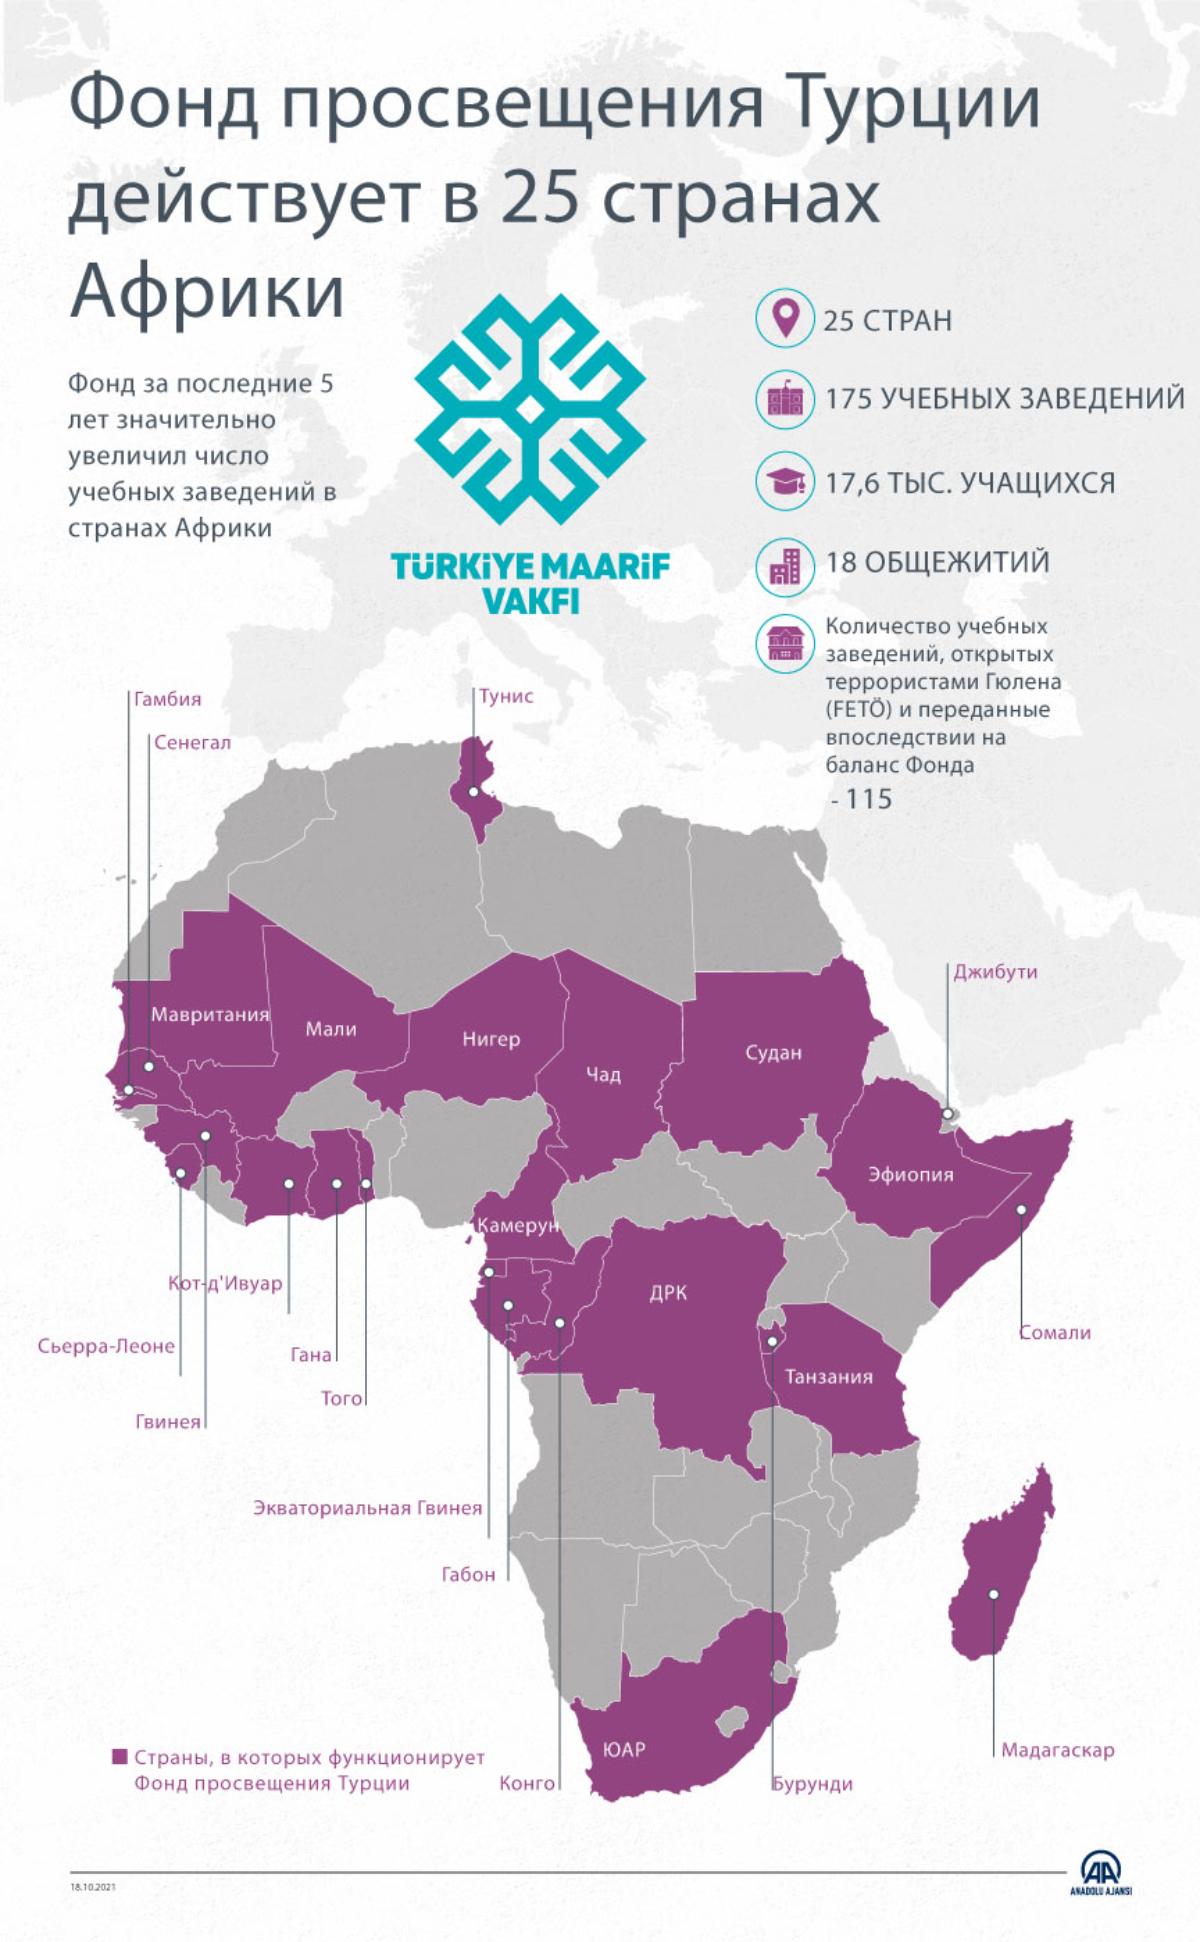 Фонд просвещения Турции предоставляет услуги в 25 странах Африки